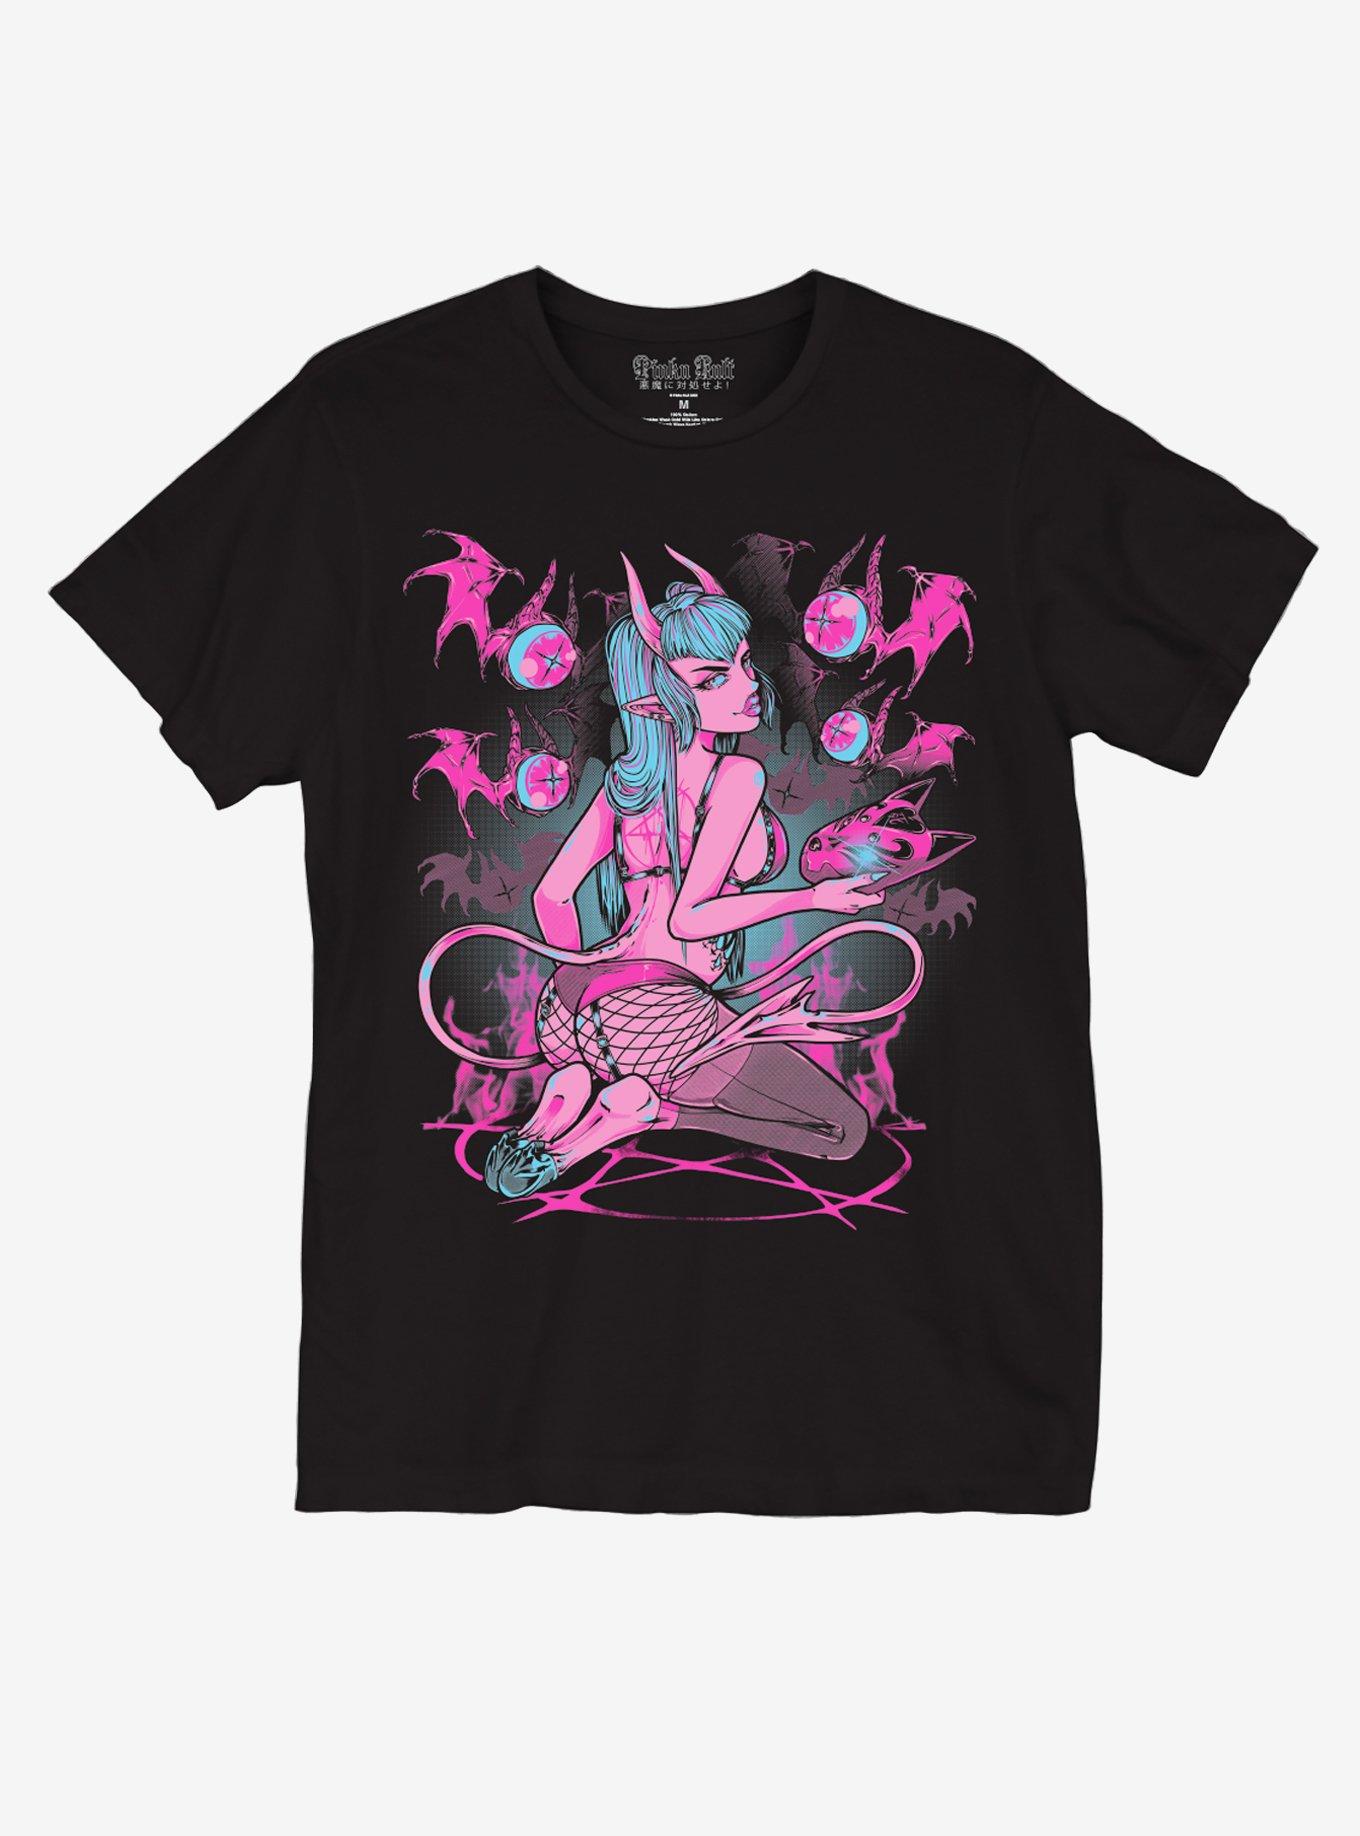 Shi-Chan Devil Girl T-Shirt By Pinku Kult